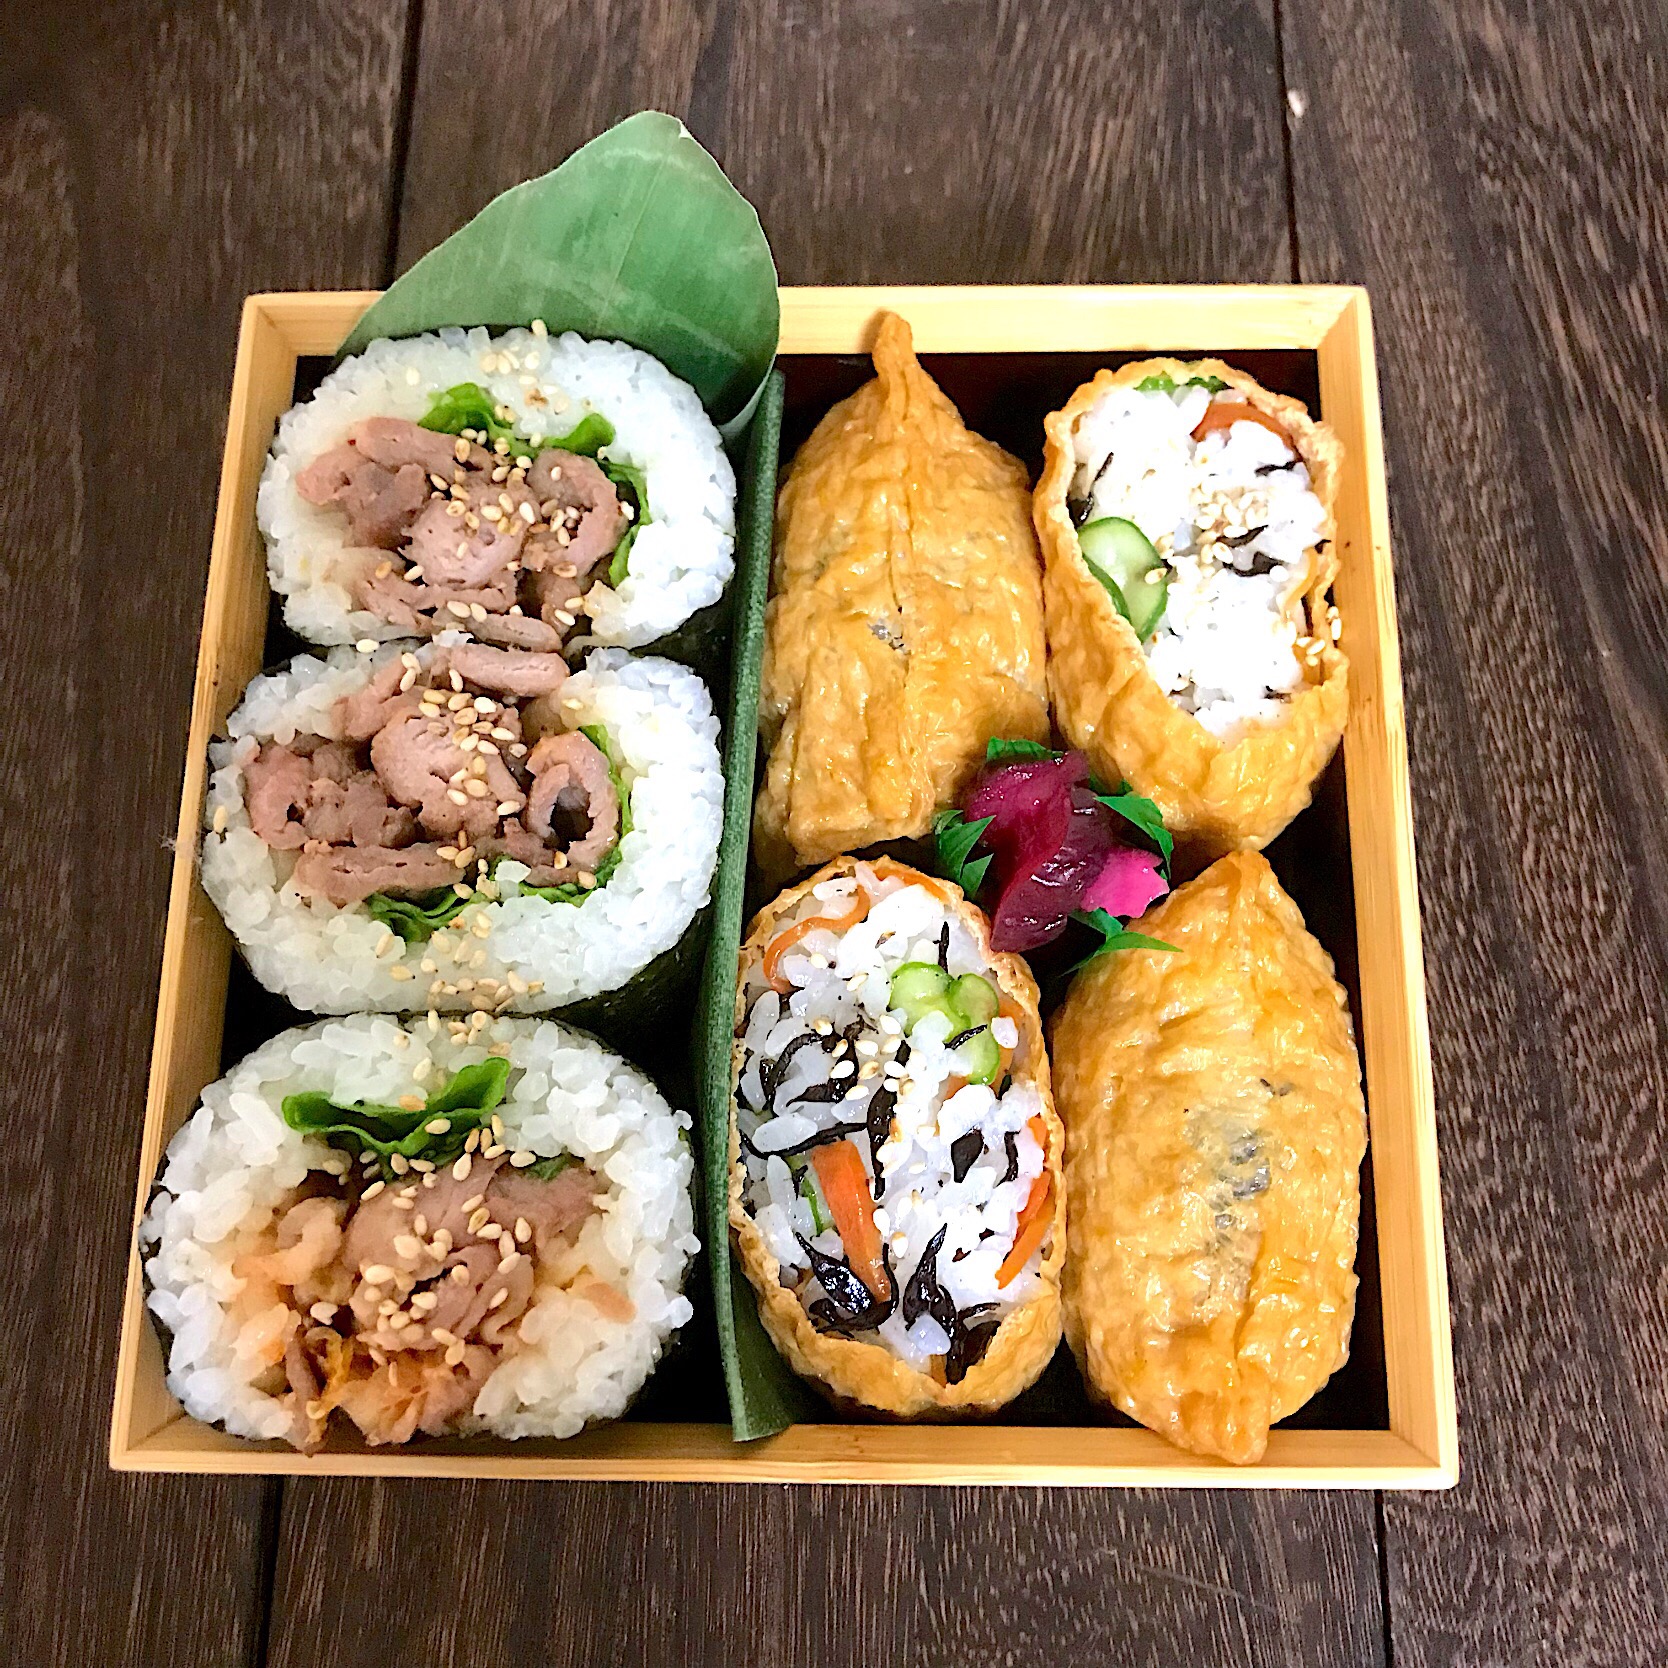 プルコギ巻き寿司とヒジキの混ぜご飯稲荷寿司